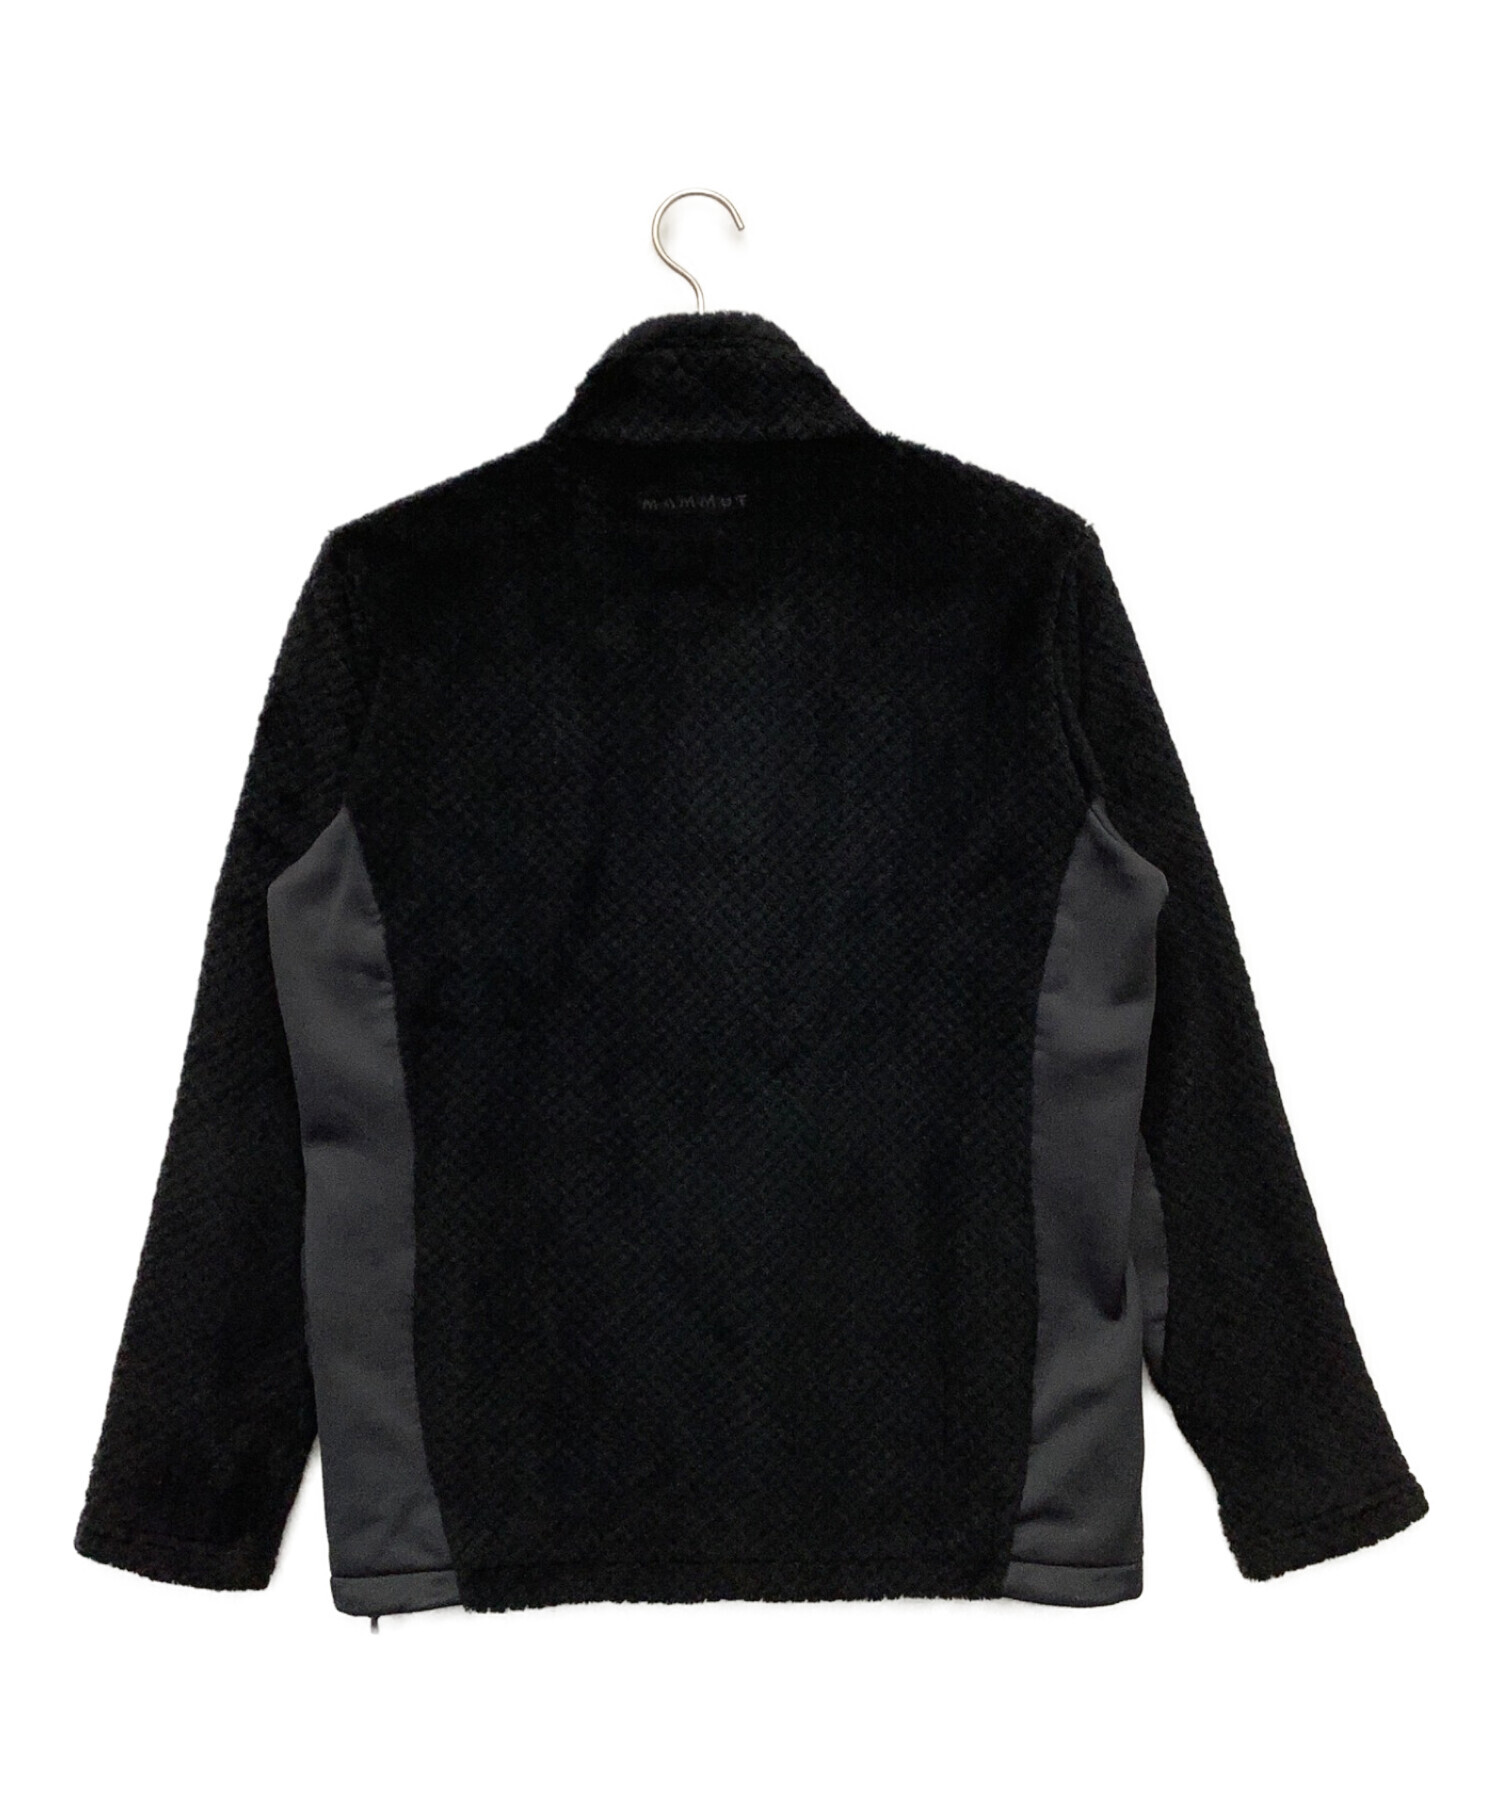 MAMMUT (マムート) ボアジャケット ブラック サイズ:M